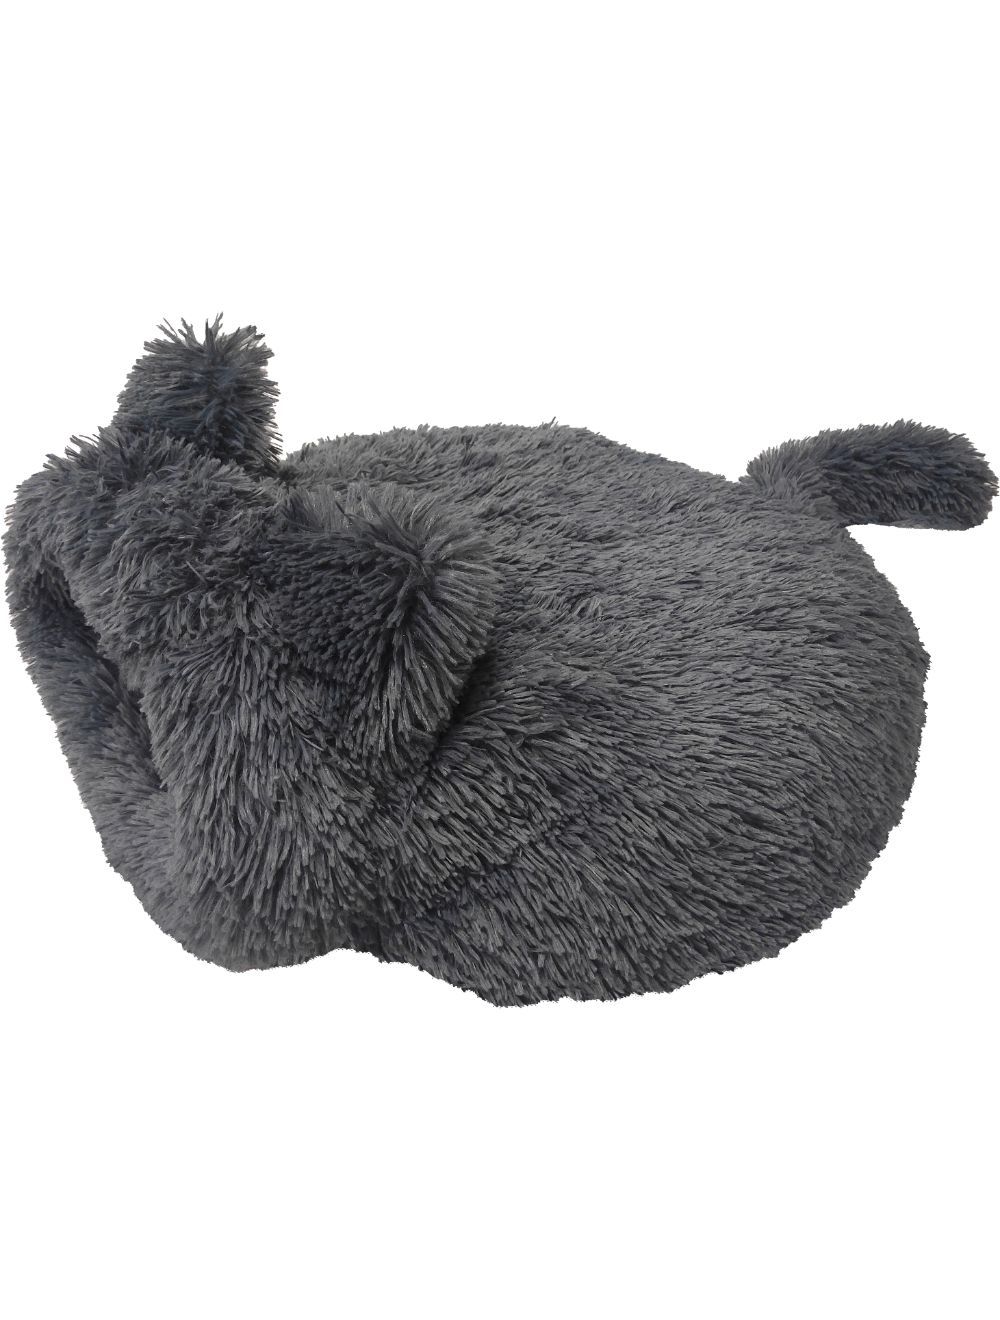 Billede af Fluffy kattehule grå 55x55 cm